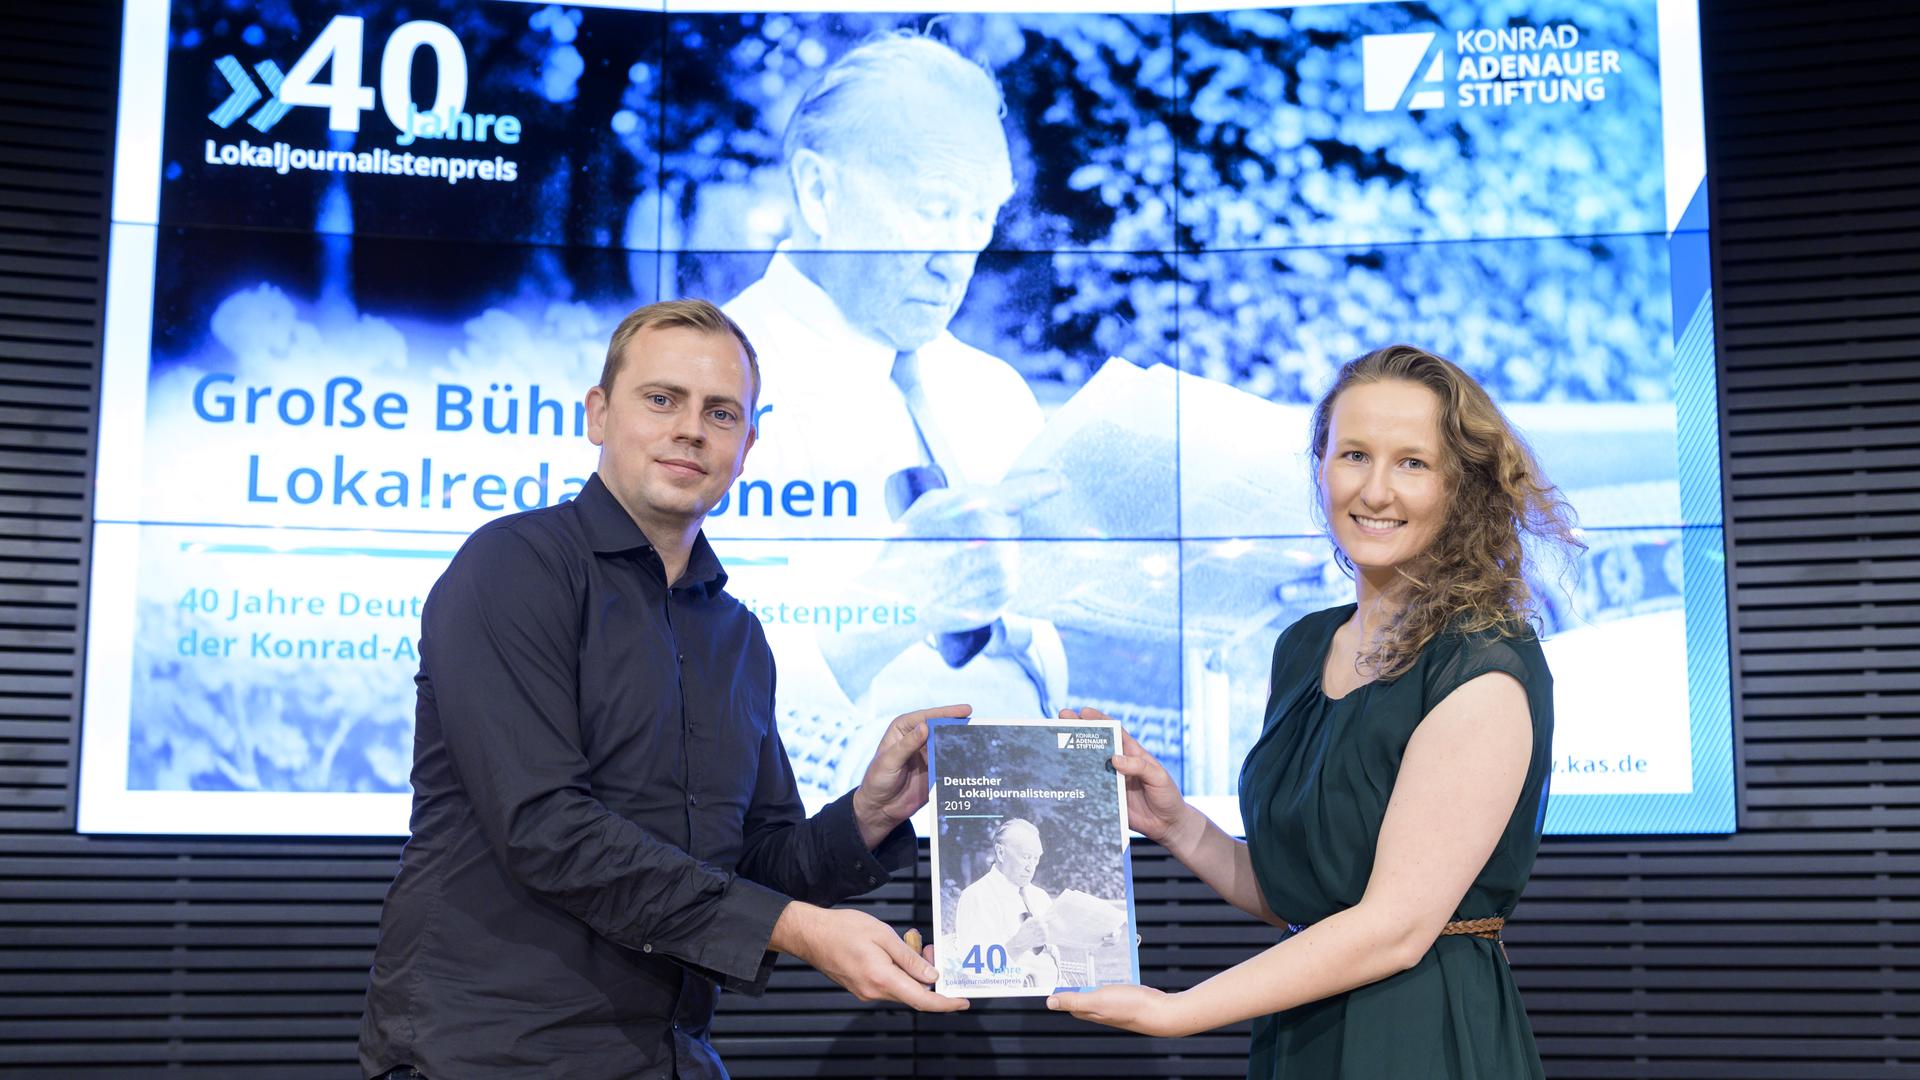 Markus Pöhlking und Julia Weller bei der Verleihung des Deutschen Lokaljournalistenpreises in Berlin.